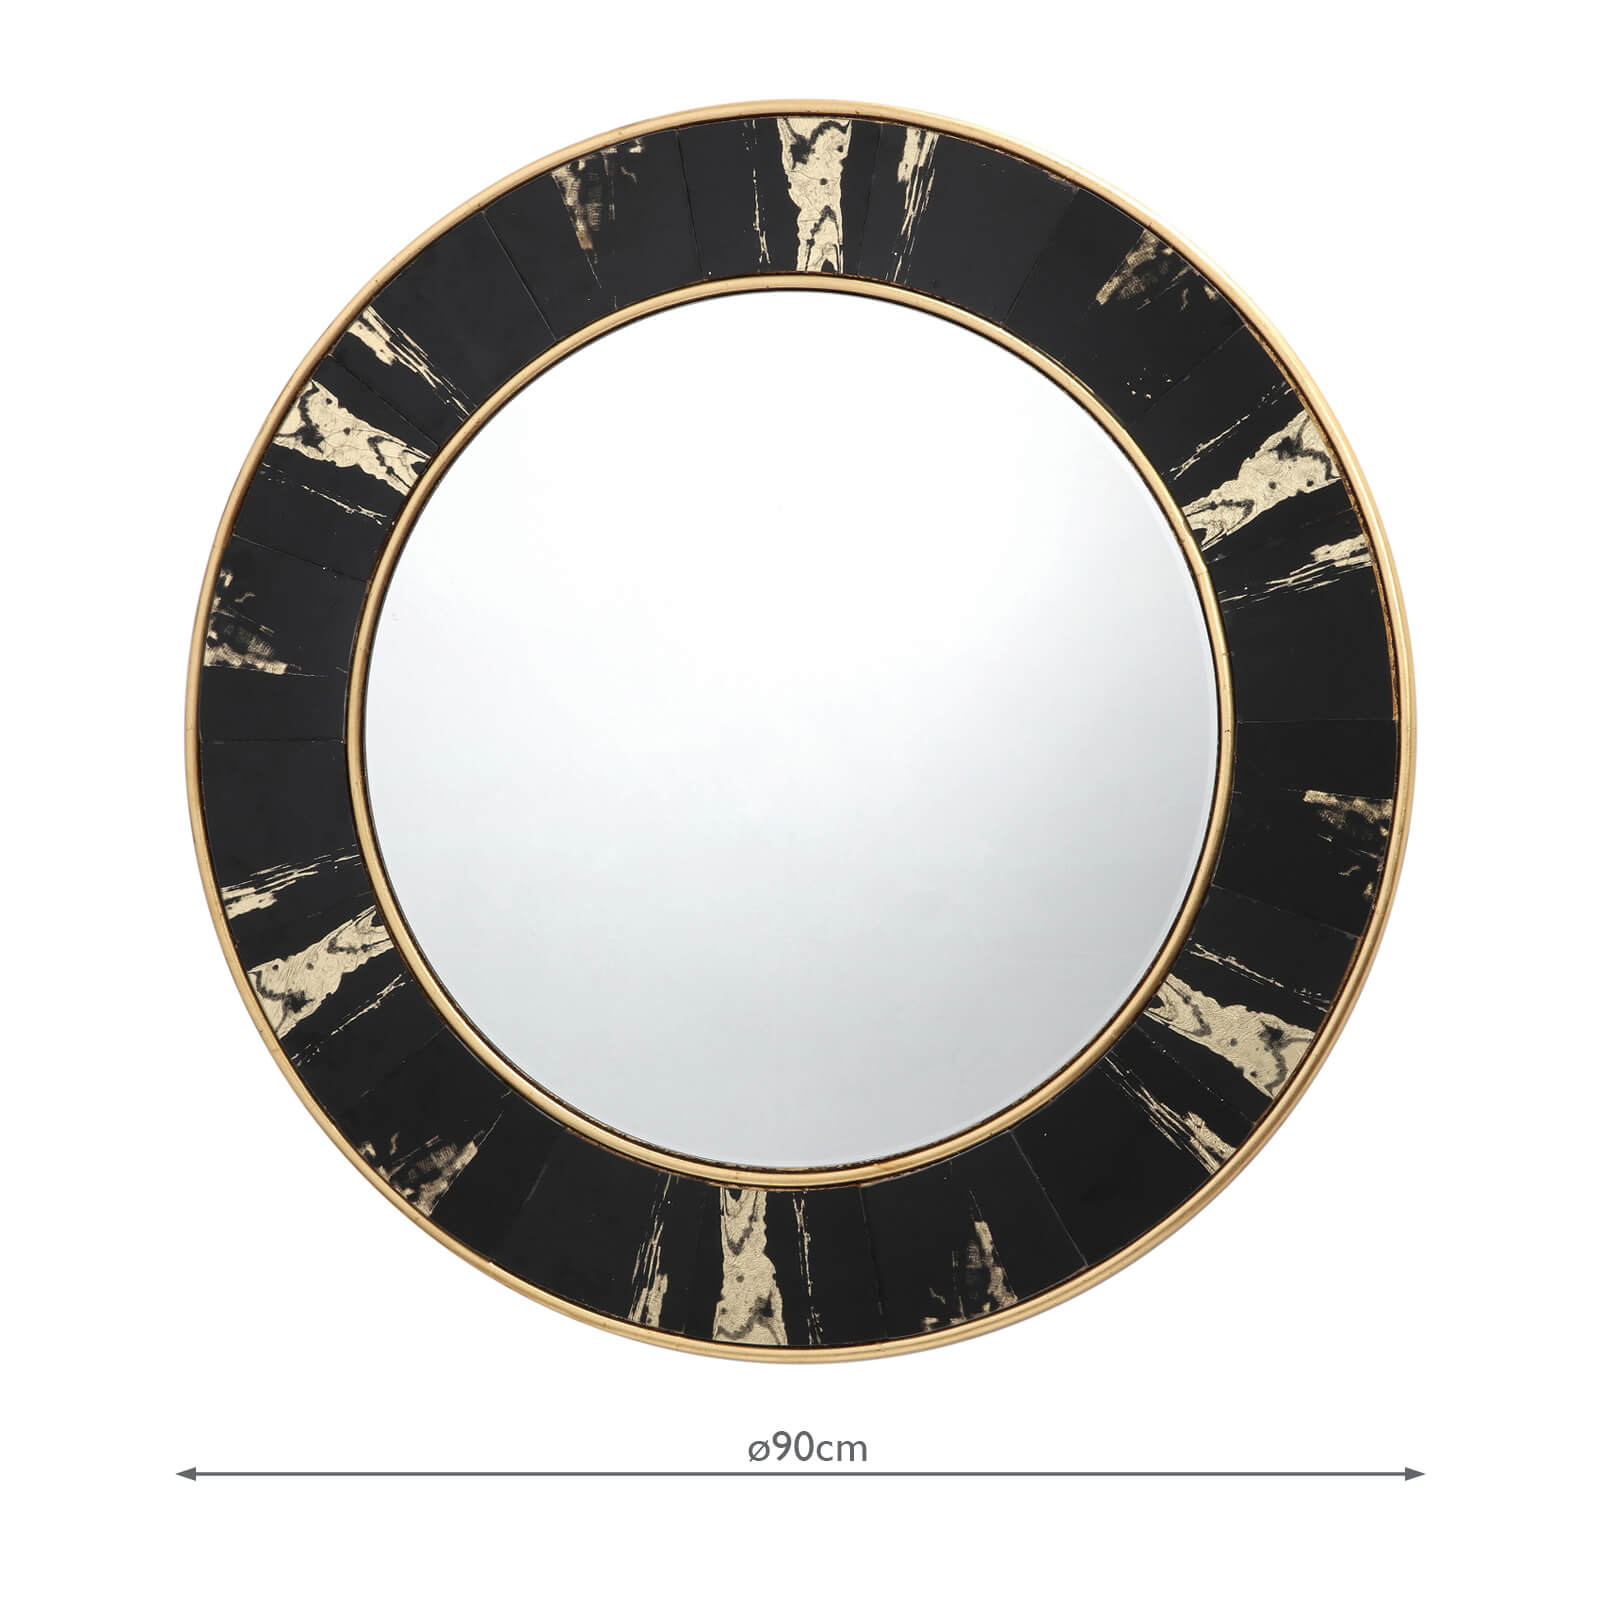 Sidone Round Mirror With Black Gold, Round Gold Mirror 80cm